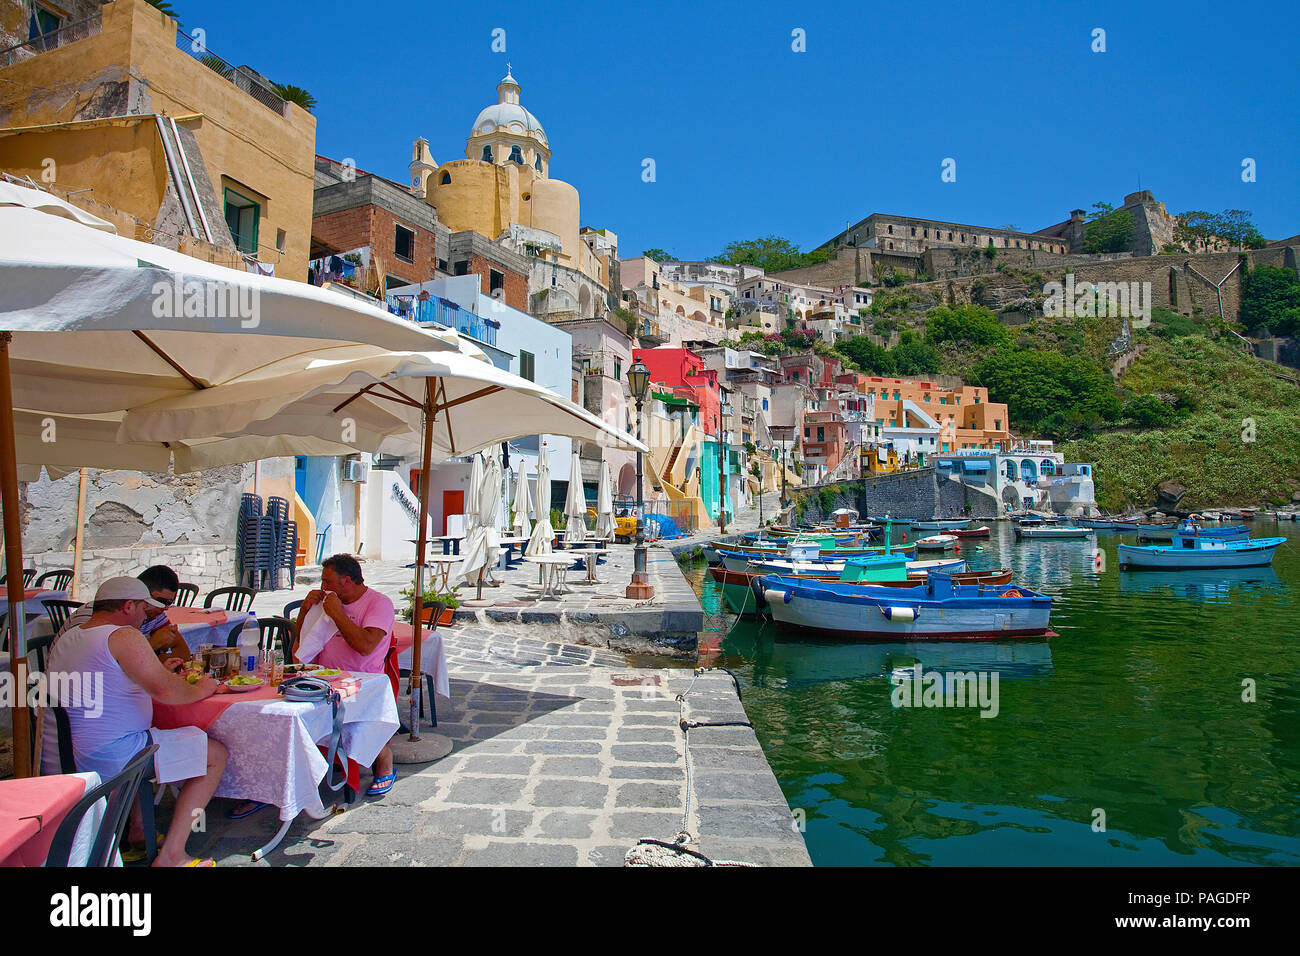 Porto idilliaco ristorante al porto di pescatori di Marina di Corricella, Procida, Golfo di Napoli, Italia Foto Stock